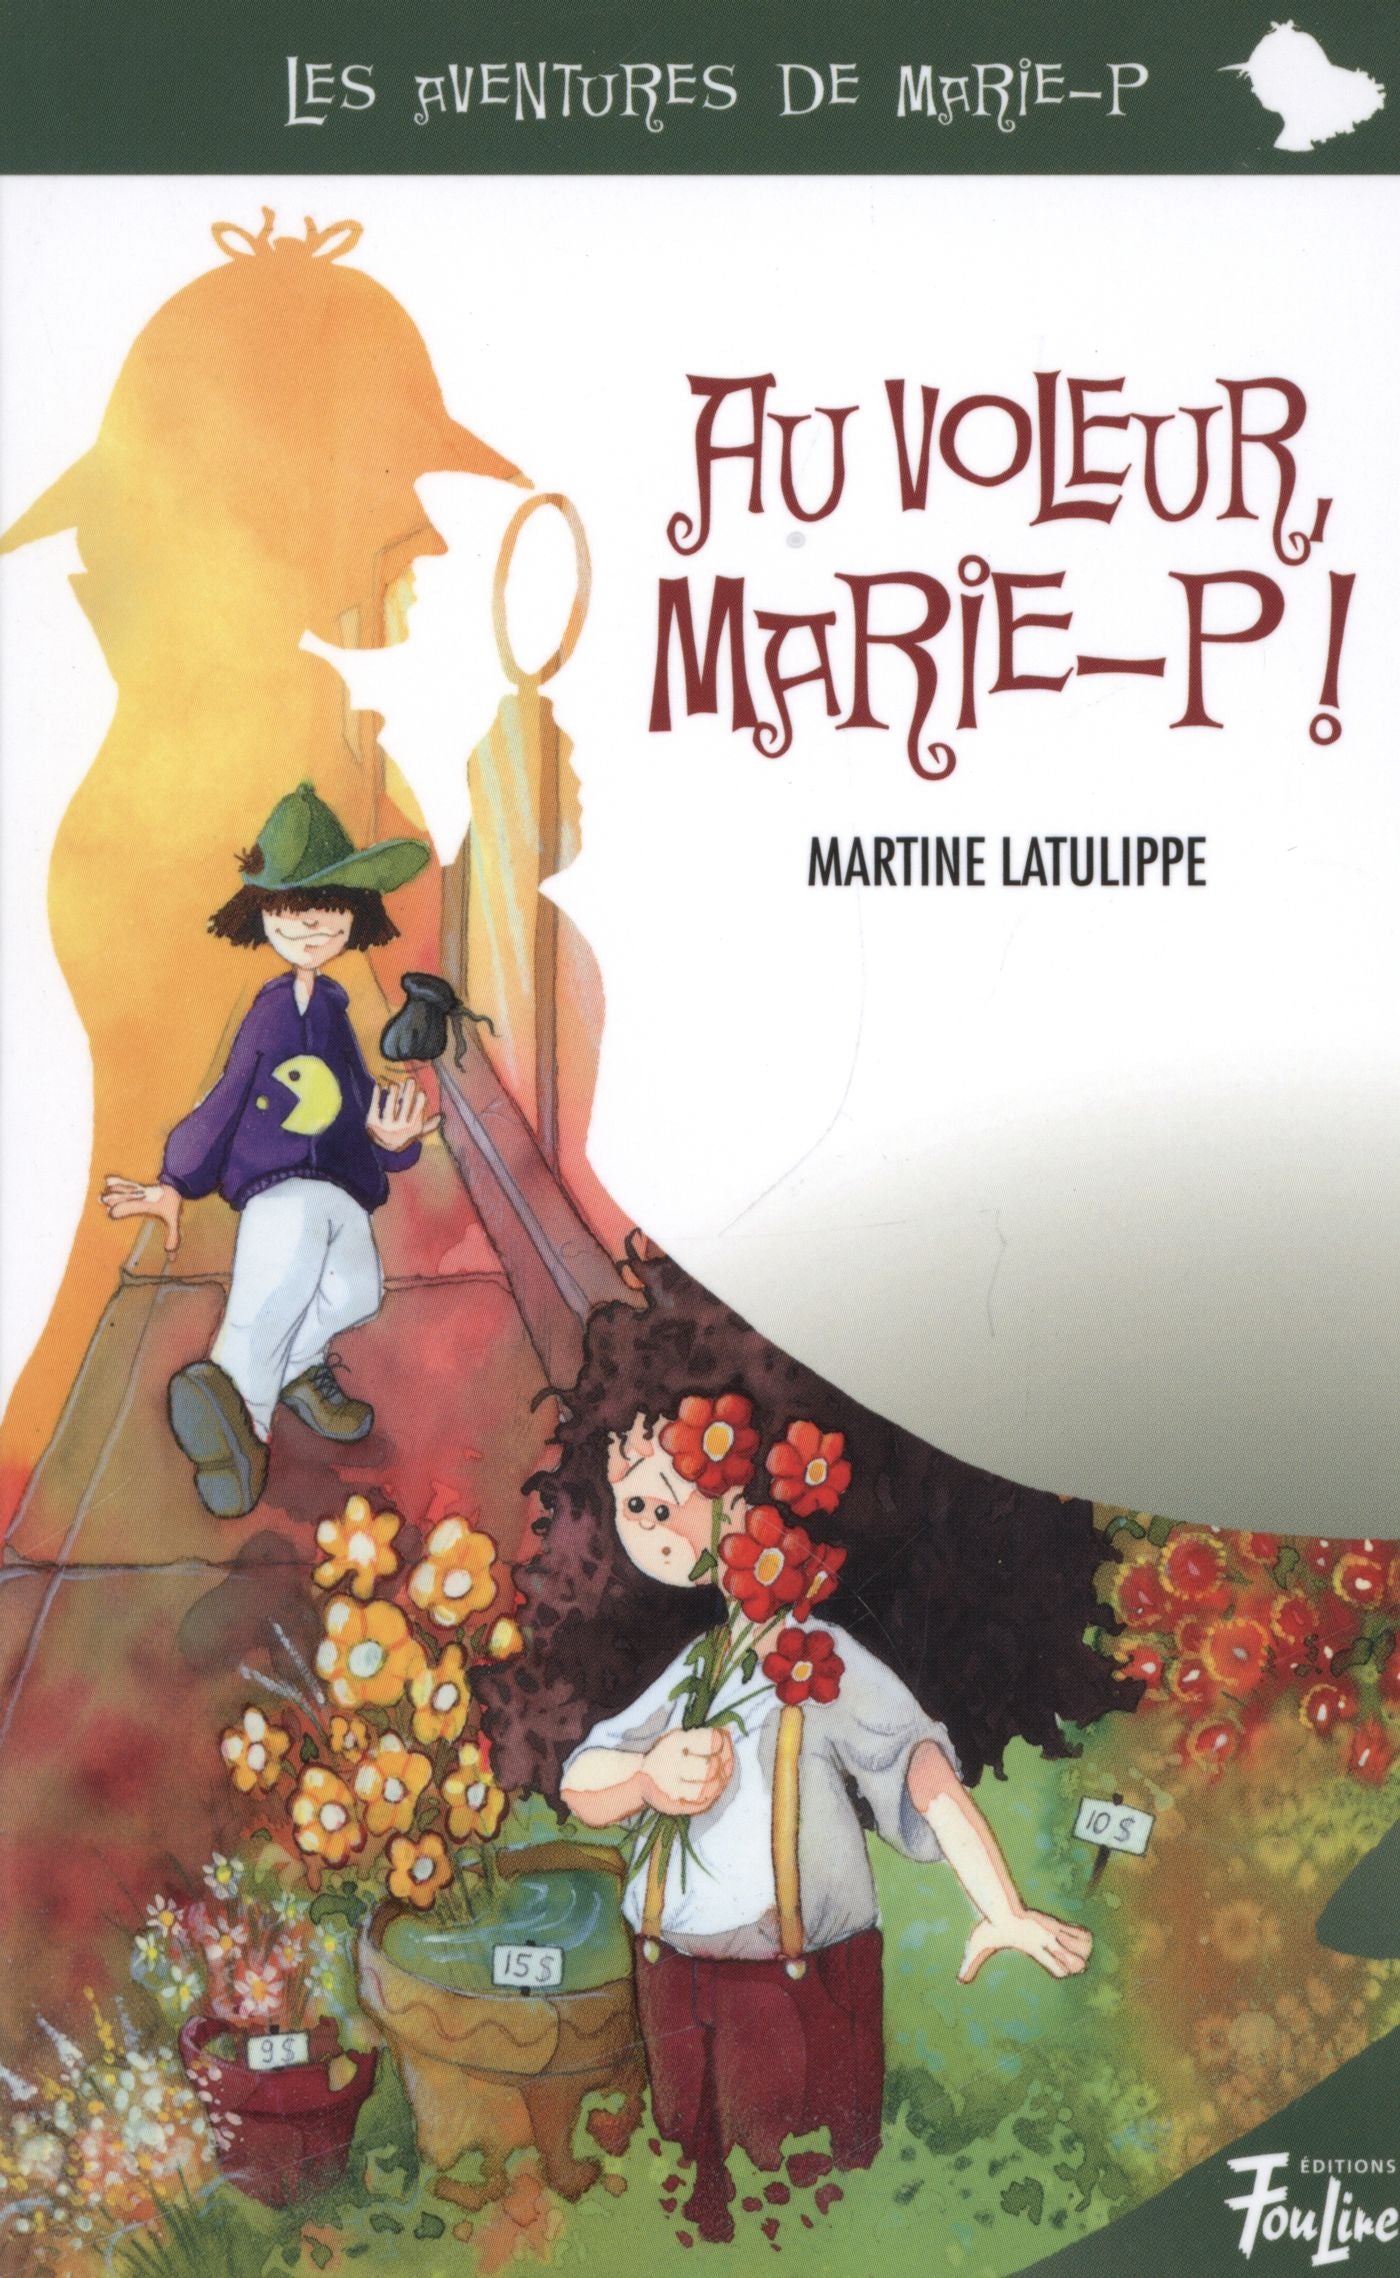 Les aventures de Marie-P # 3 : Au voleur, Marie-P! - Martine Latulippe